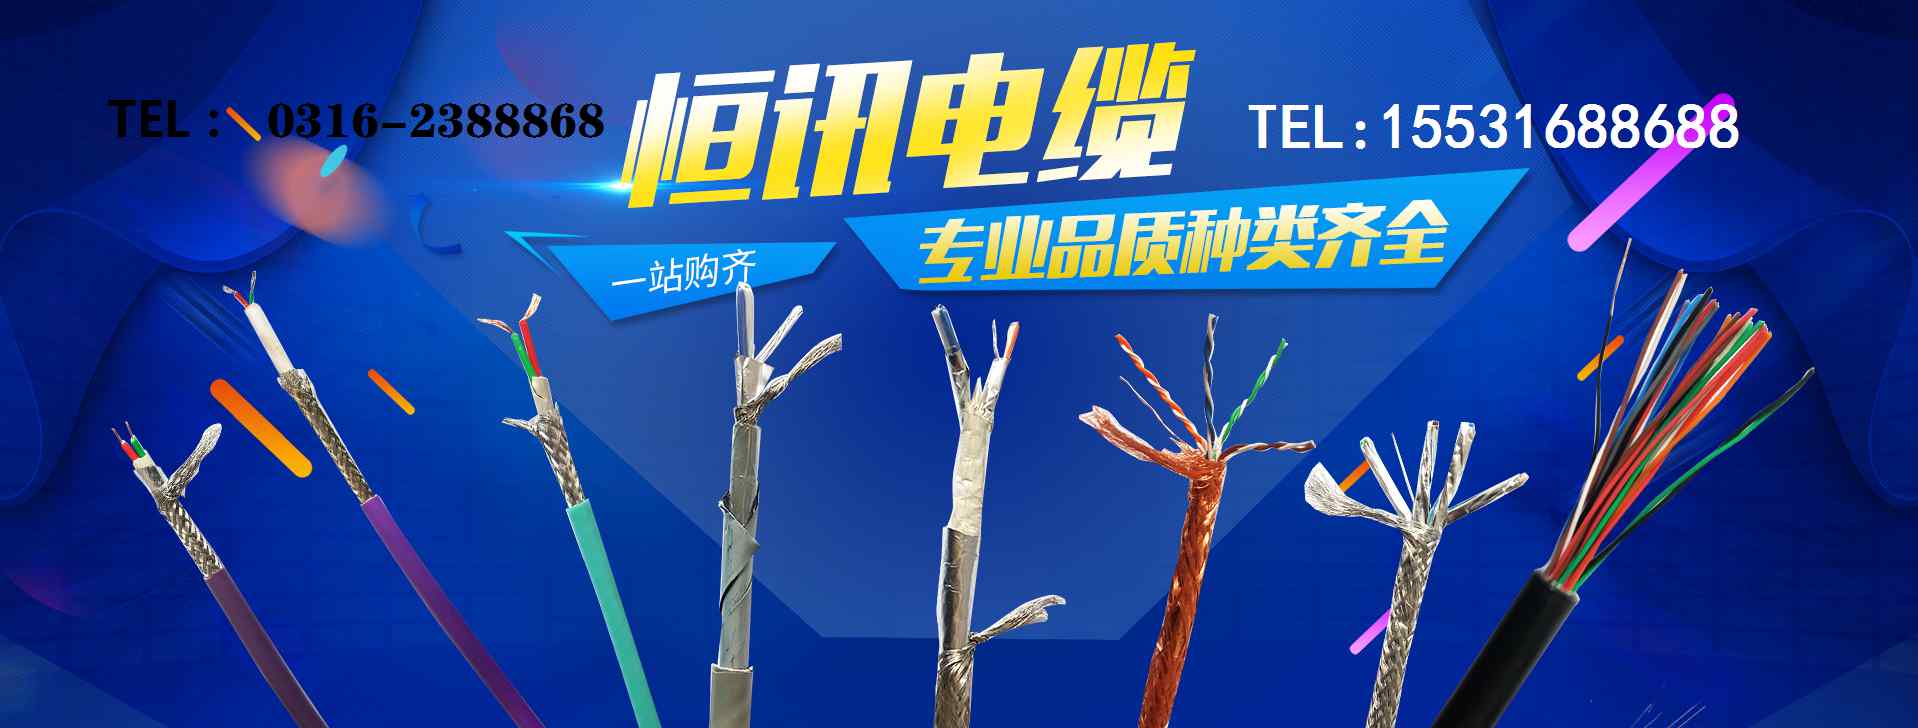 耐油电缆 耐油电缆介绍,耐油电缆材质,耐油耐腐蚀电缆使用环境